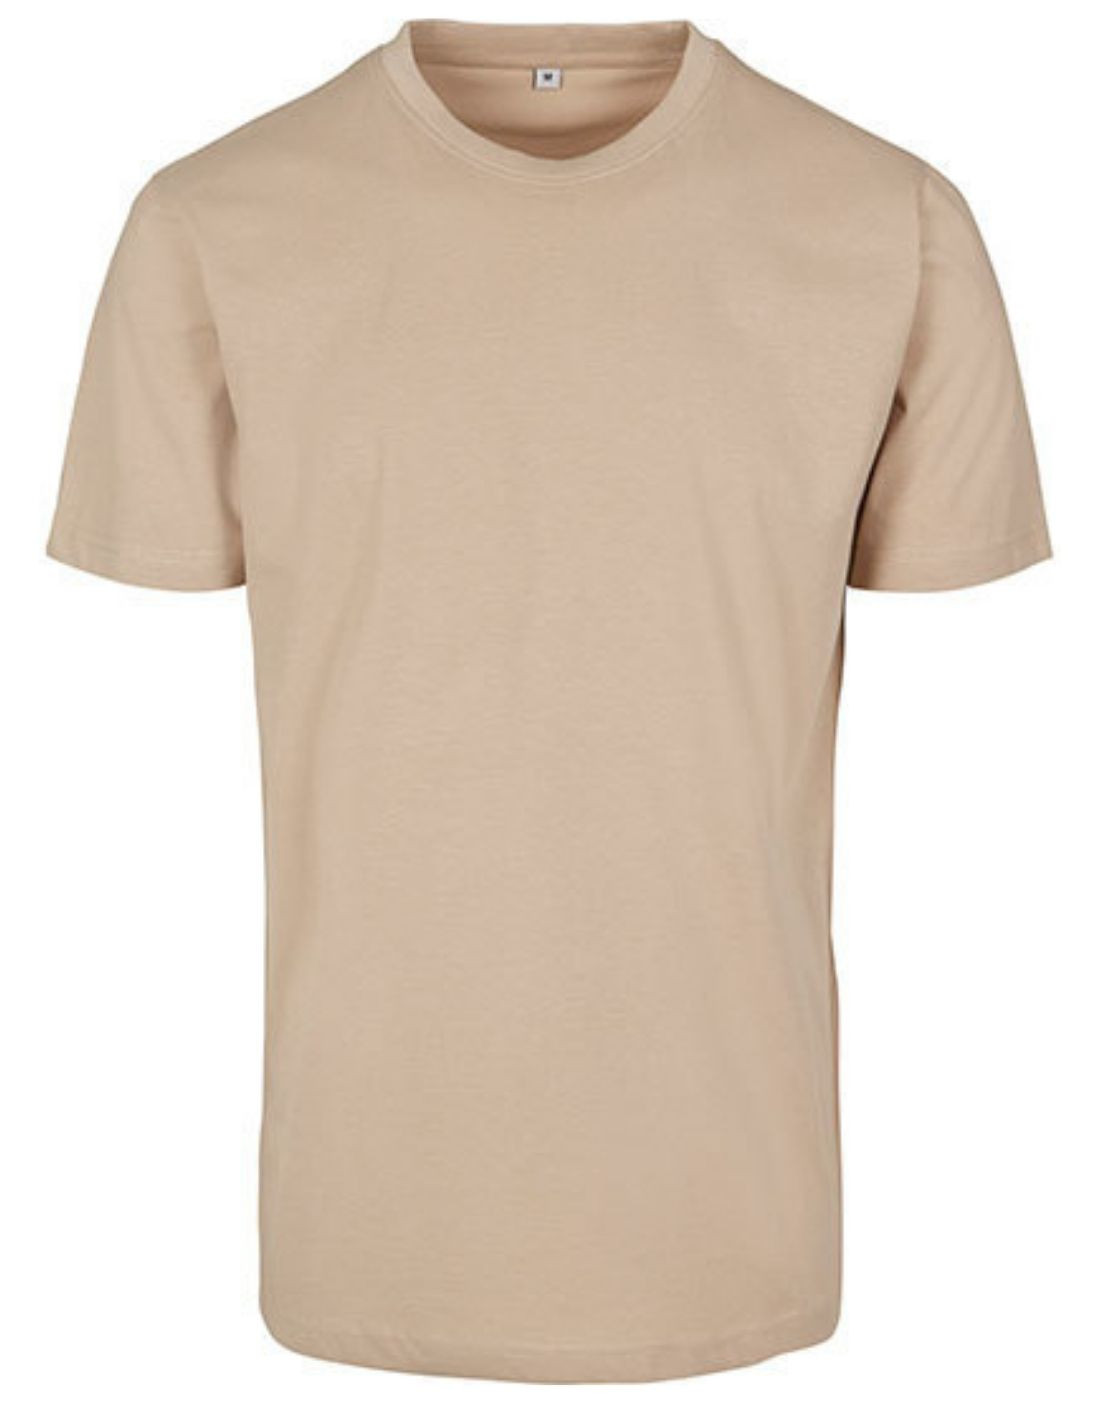 Premium Cotton T-Shirt Sand - TBY004SANDR